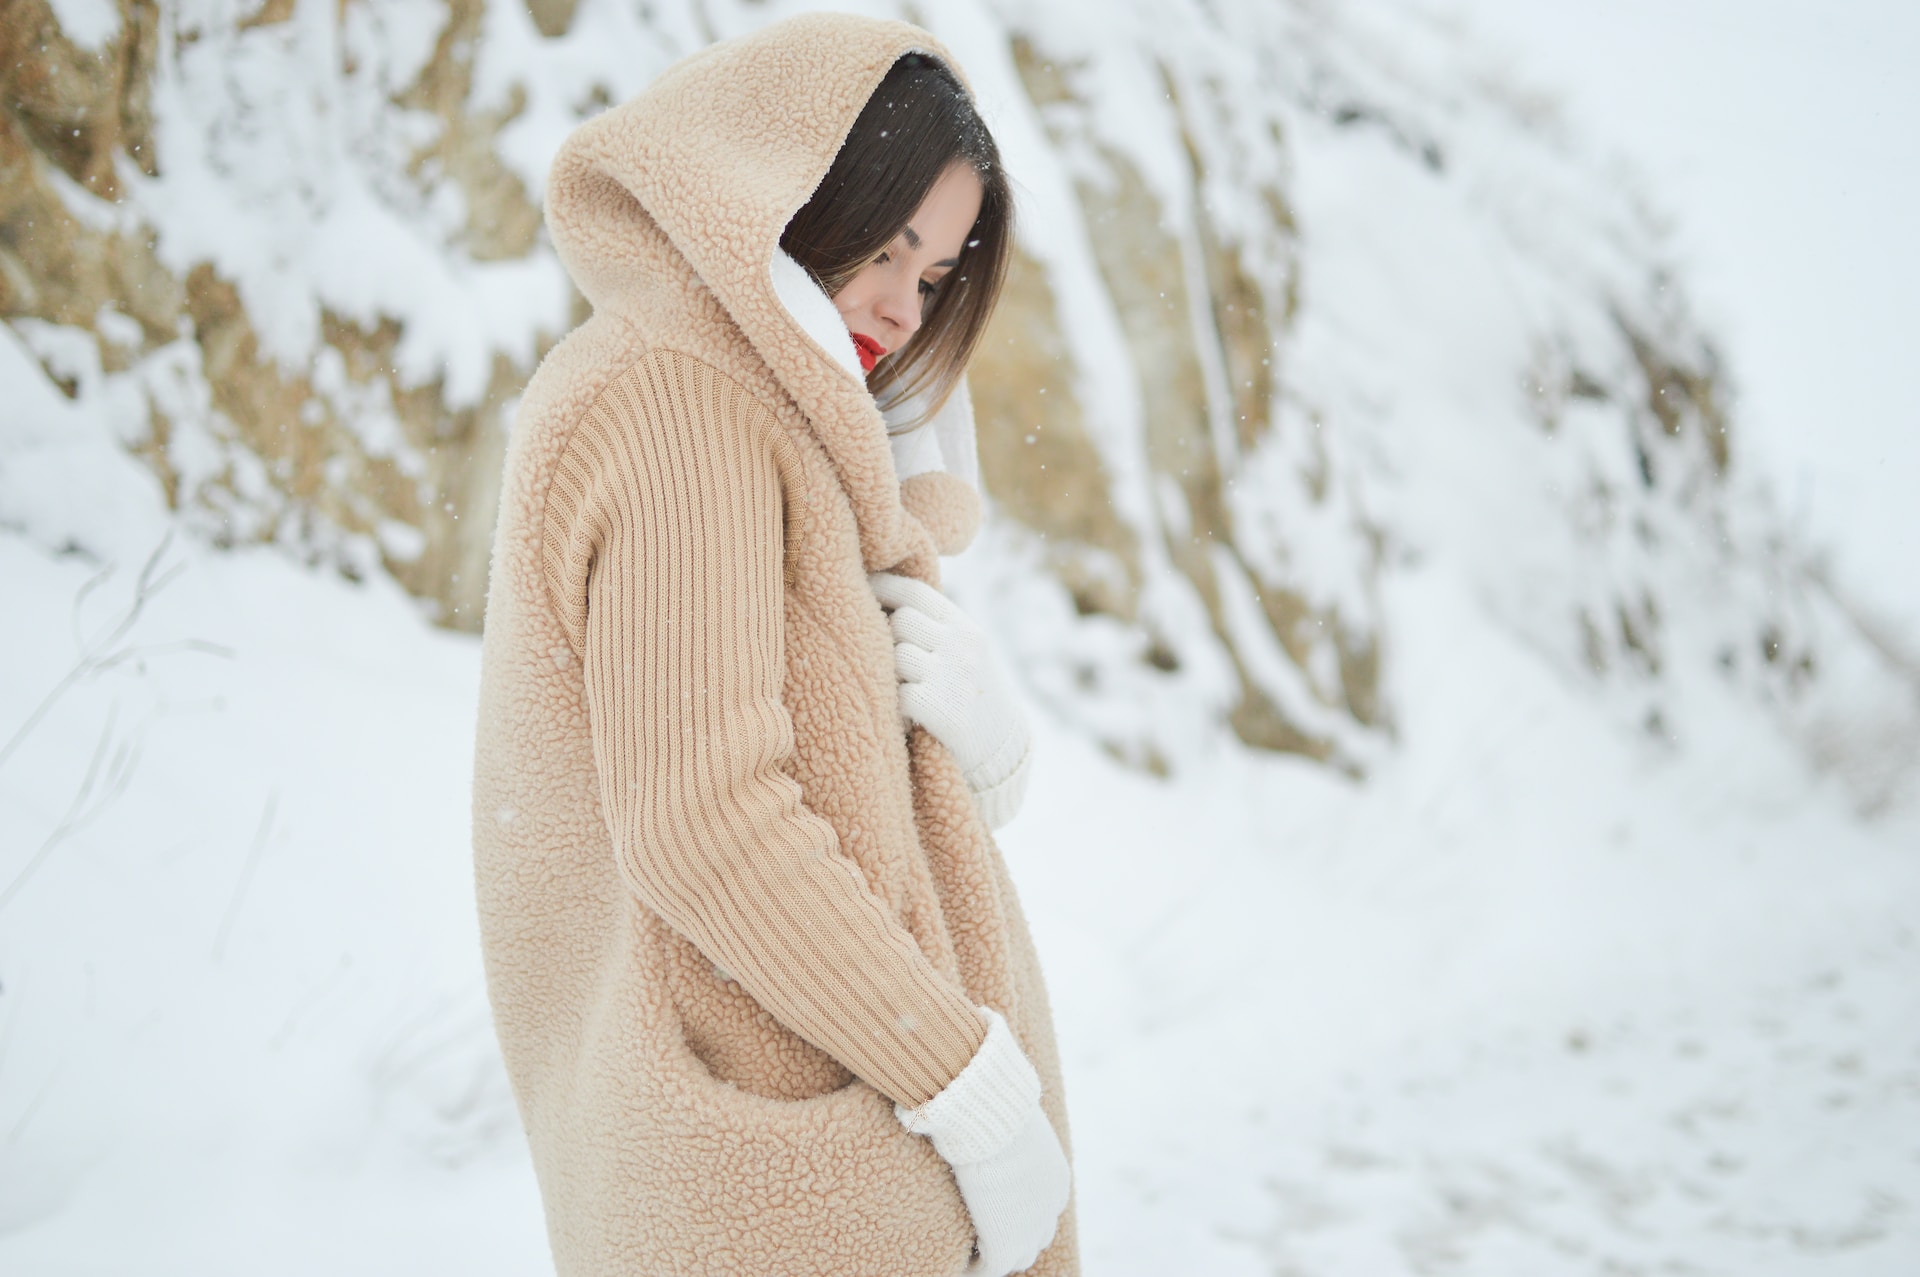 Jak stworzyć modną zimową stylizację? 4 wskazówki dla kobiet